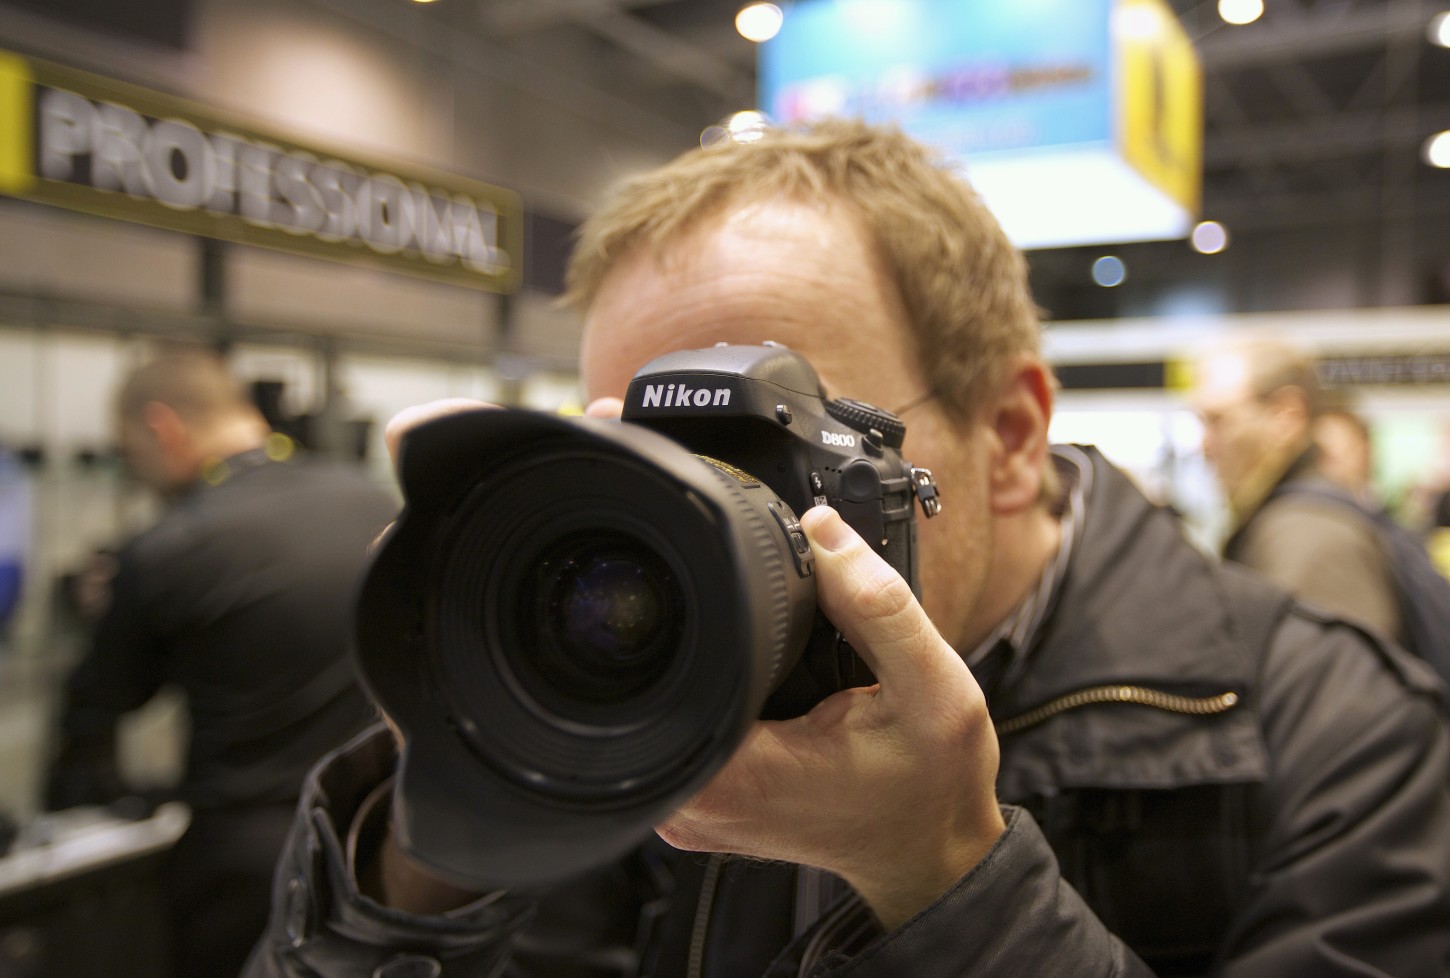 NRKbetas redaktør Eirik Solheim tester Nikons D800. Foto: Sindre Skrede / NRK